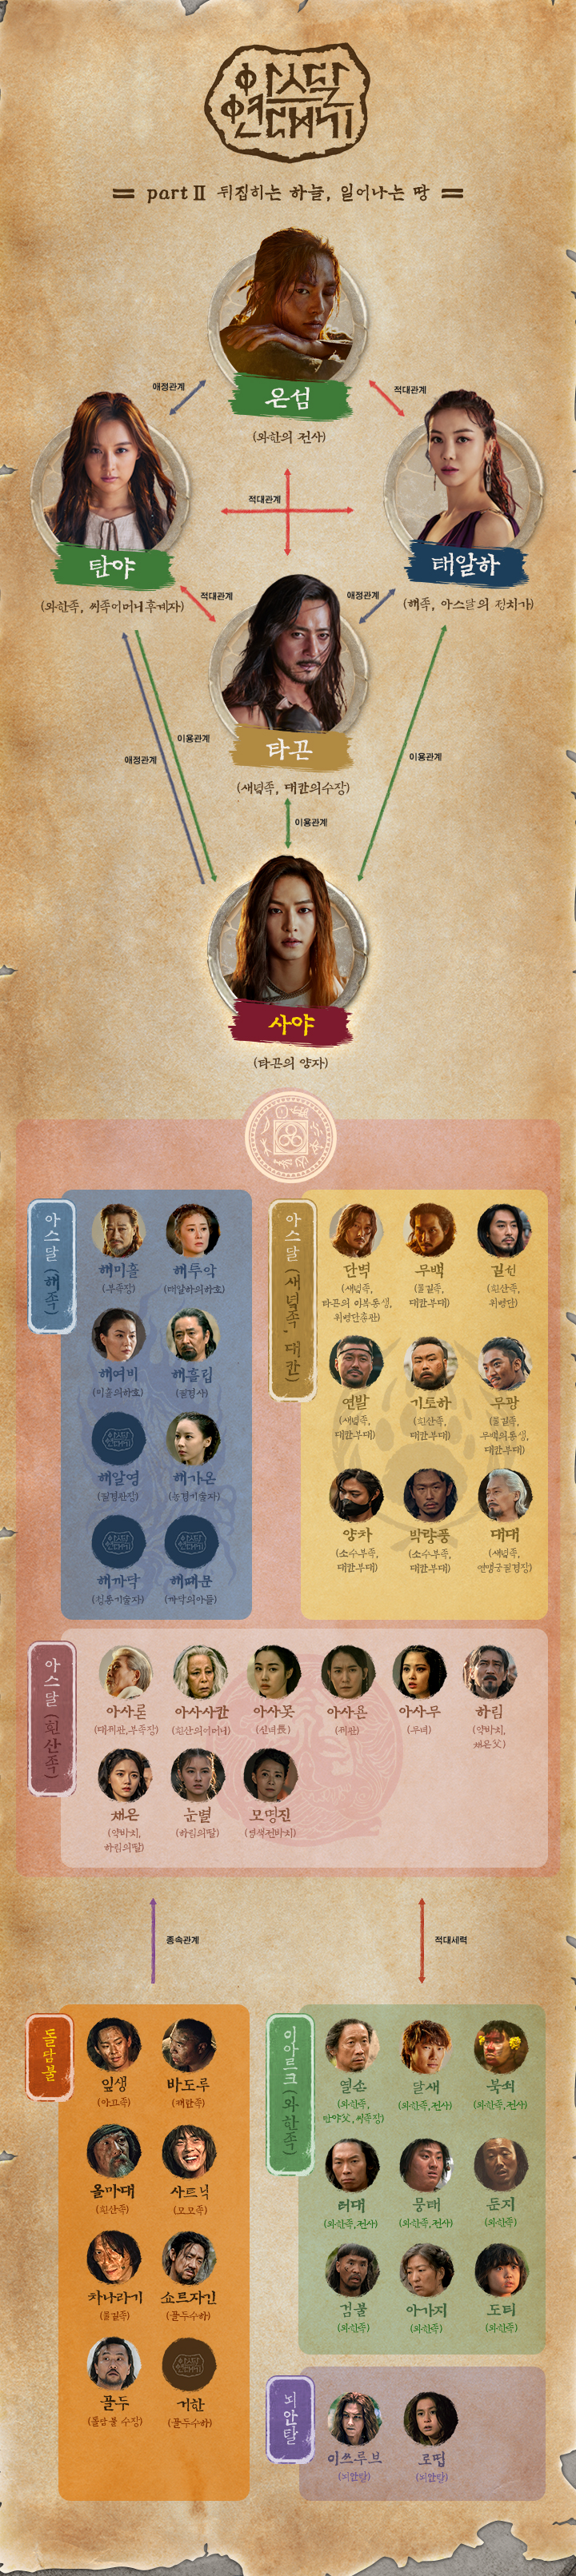 tvN‘아스달 연대기’ 홈페이지 인물관계도 사진캡처